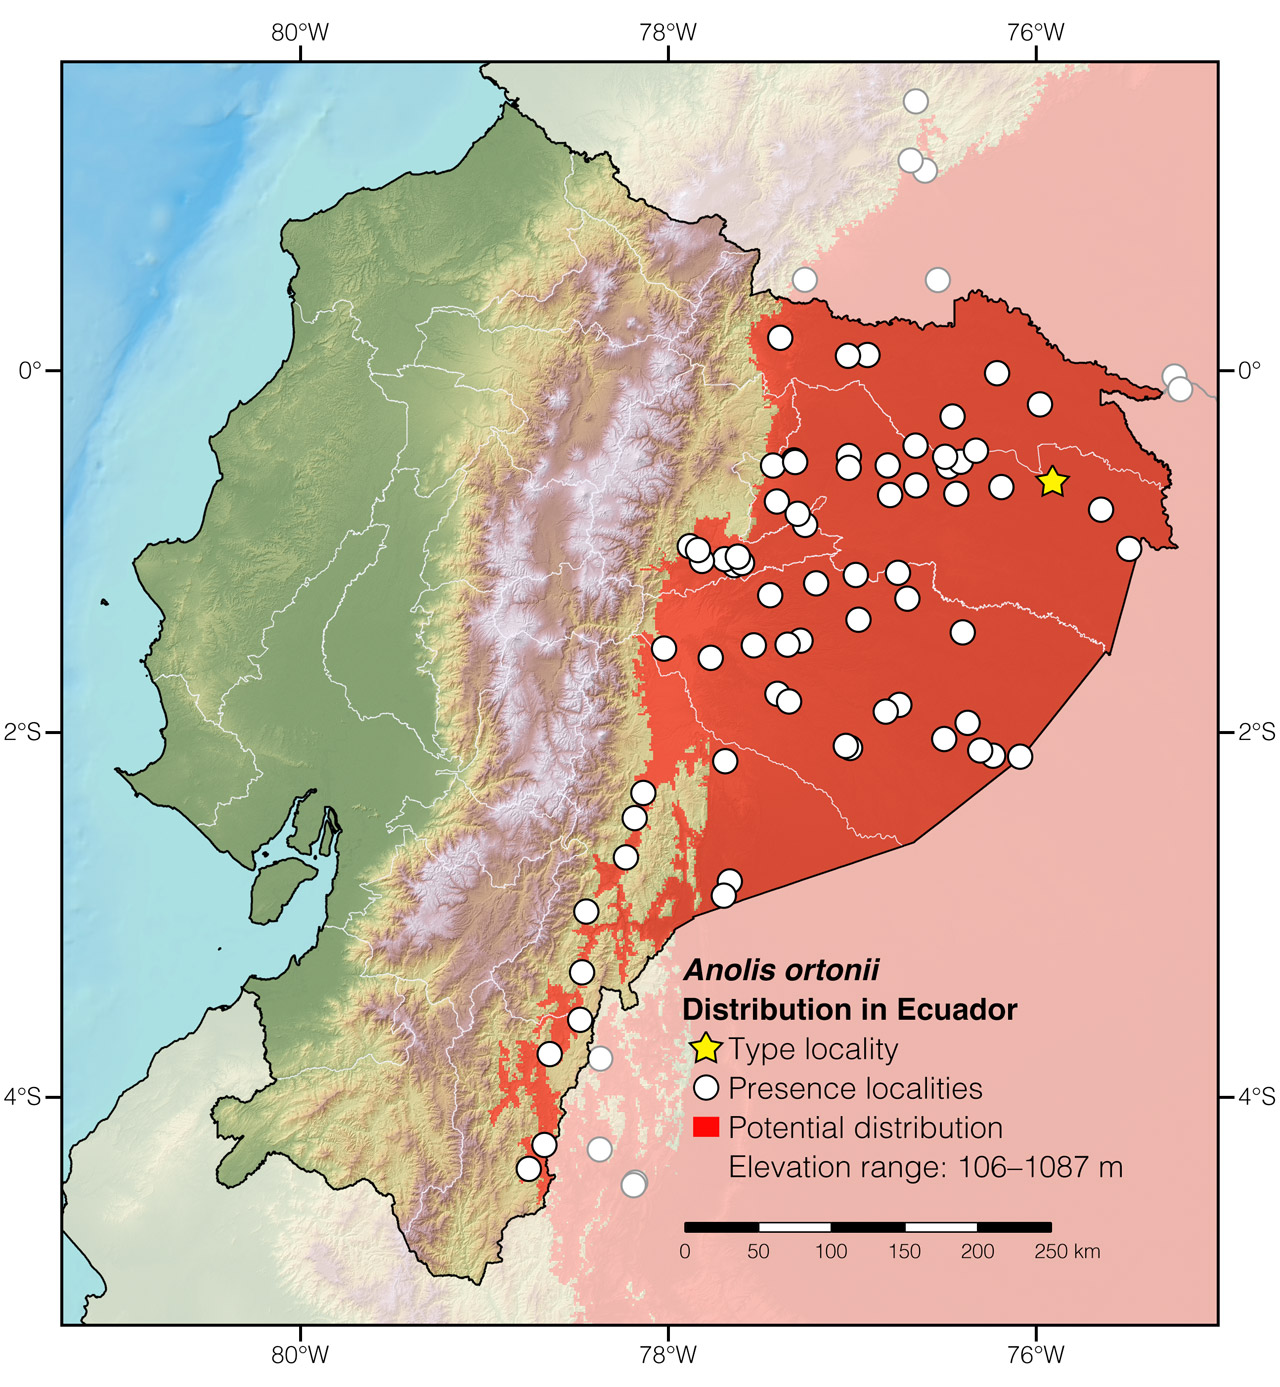 Distribution of Anolis ortonii in Ecuador